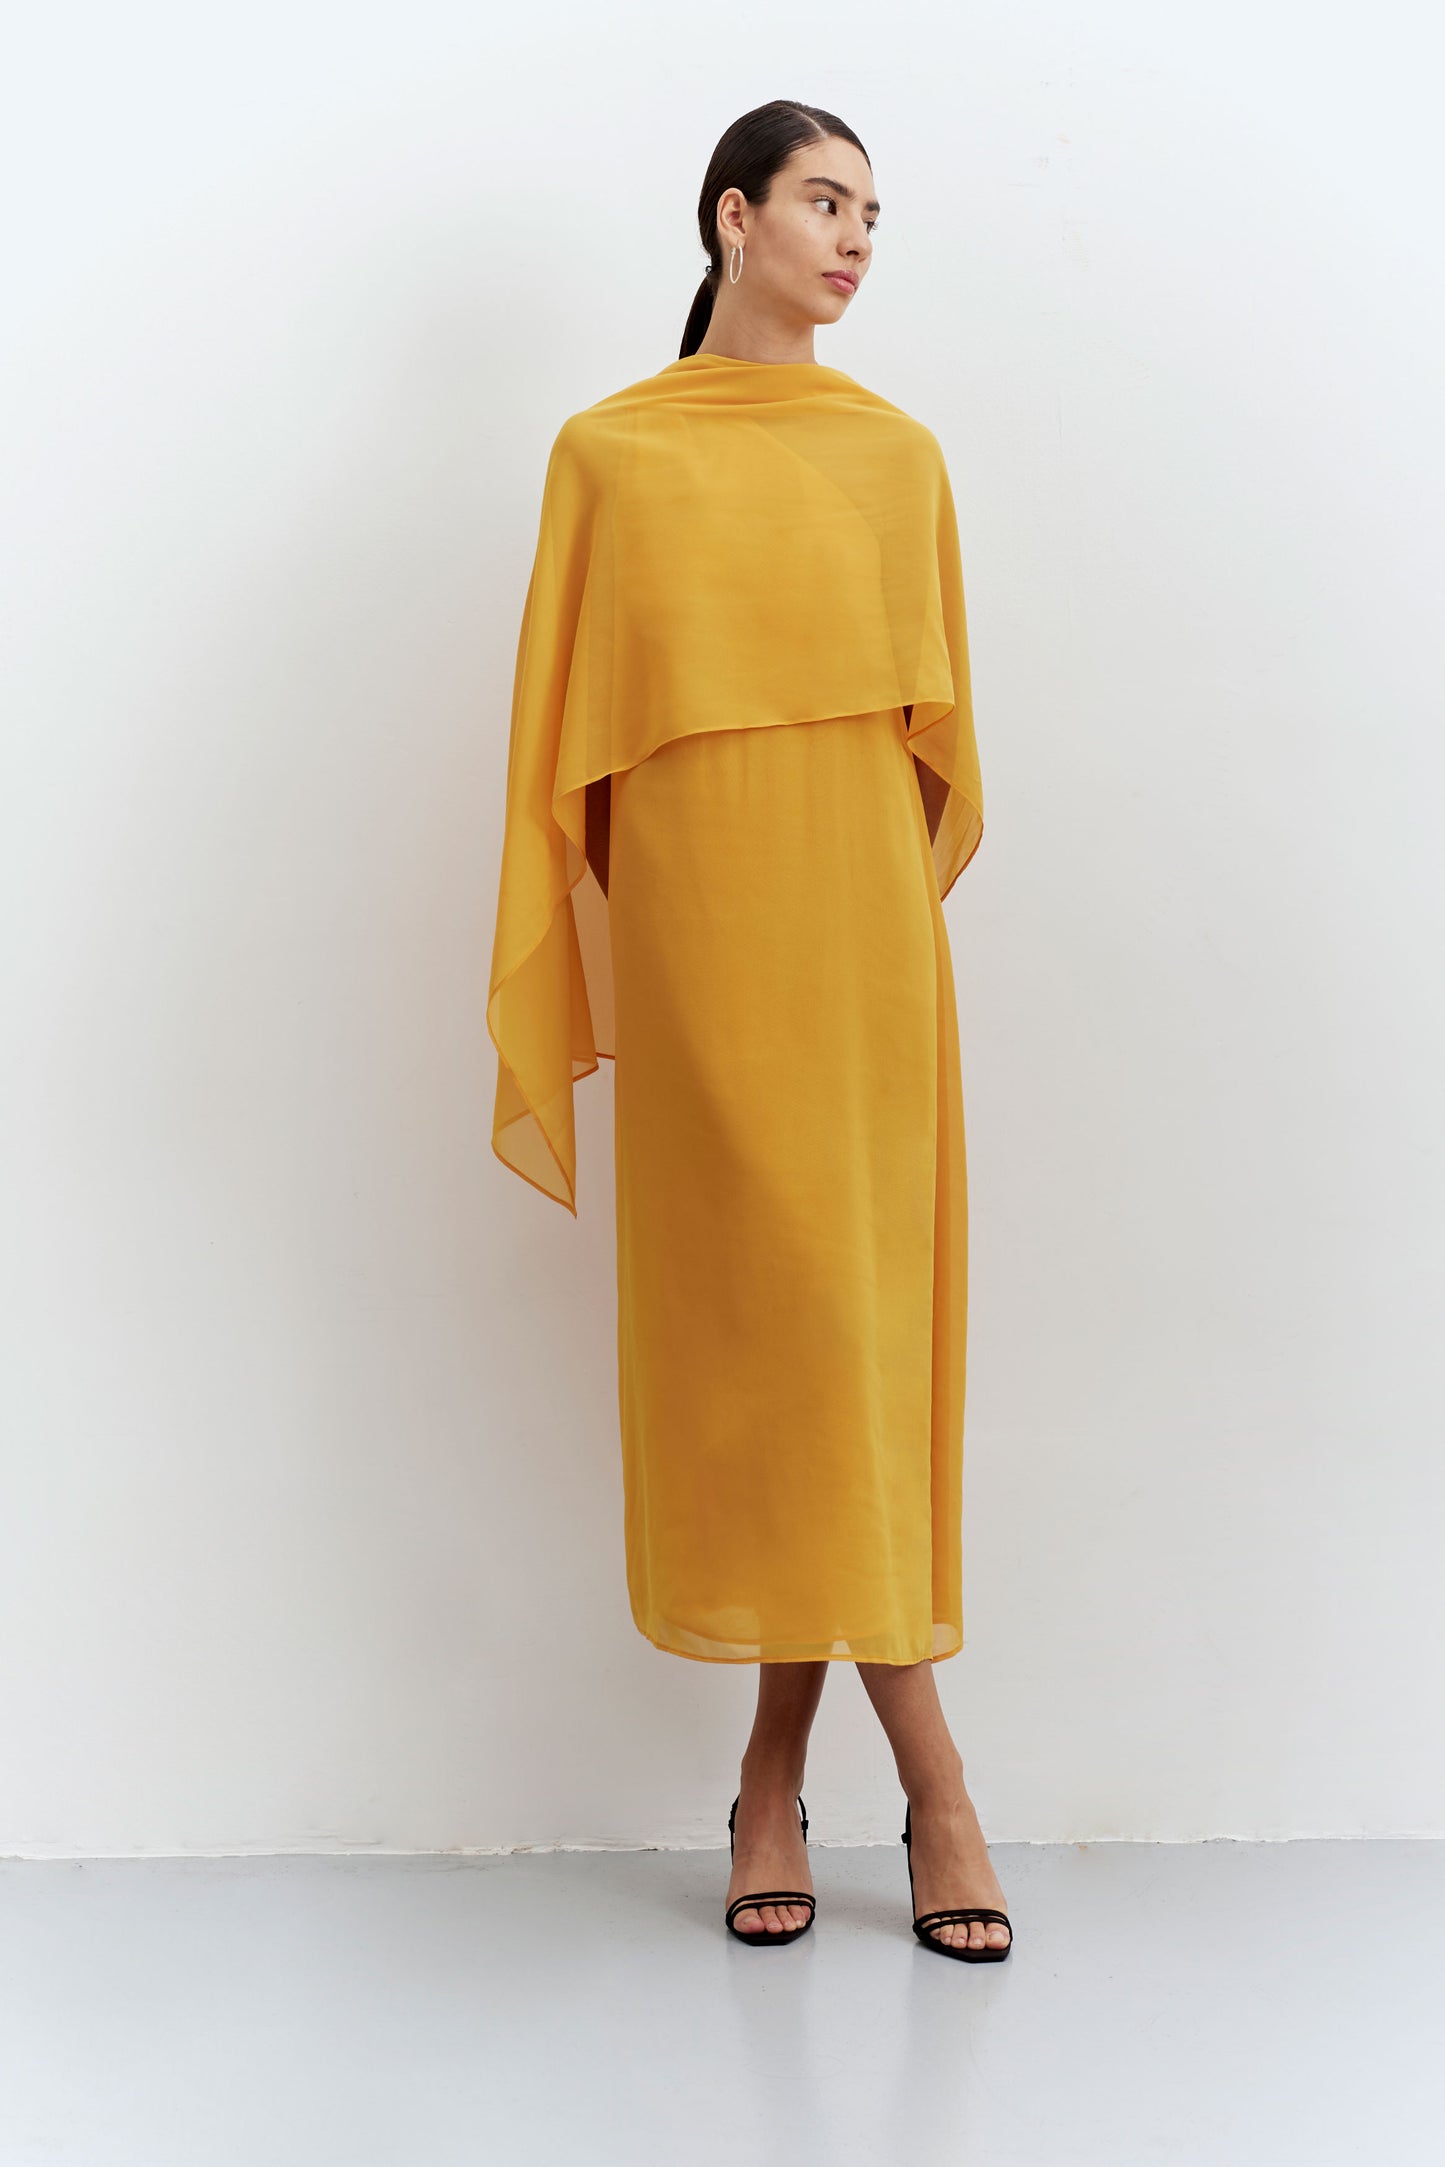 Long yellow scarf asymmetrical dress